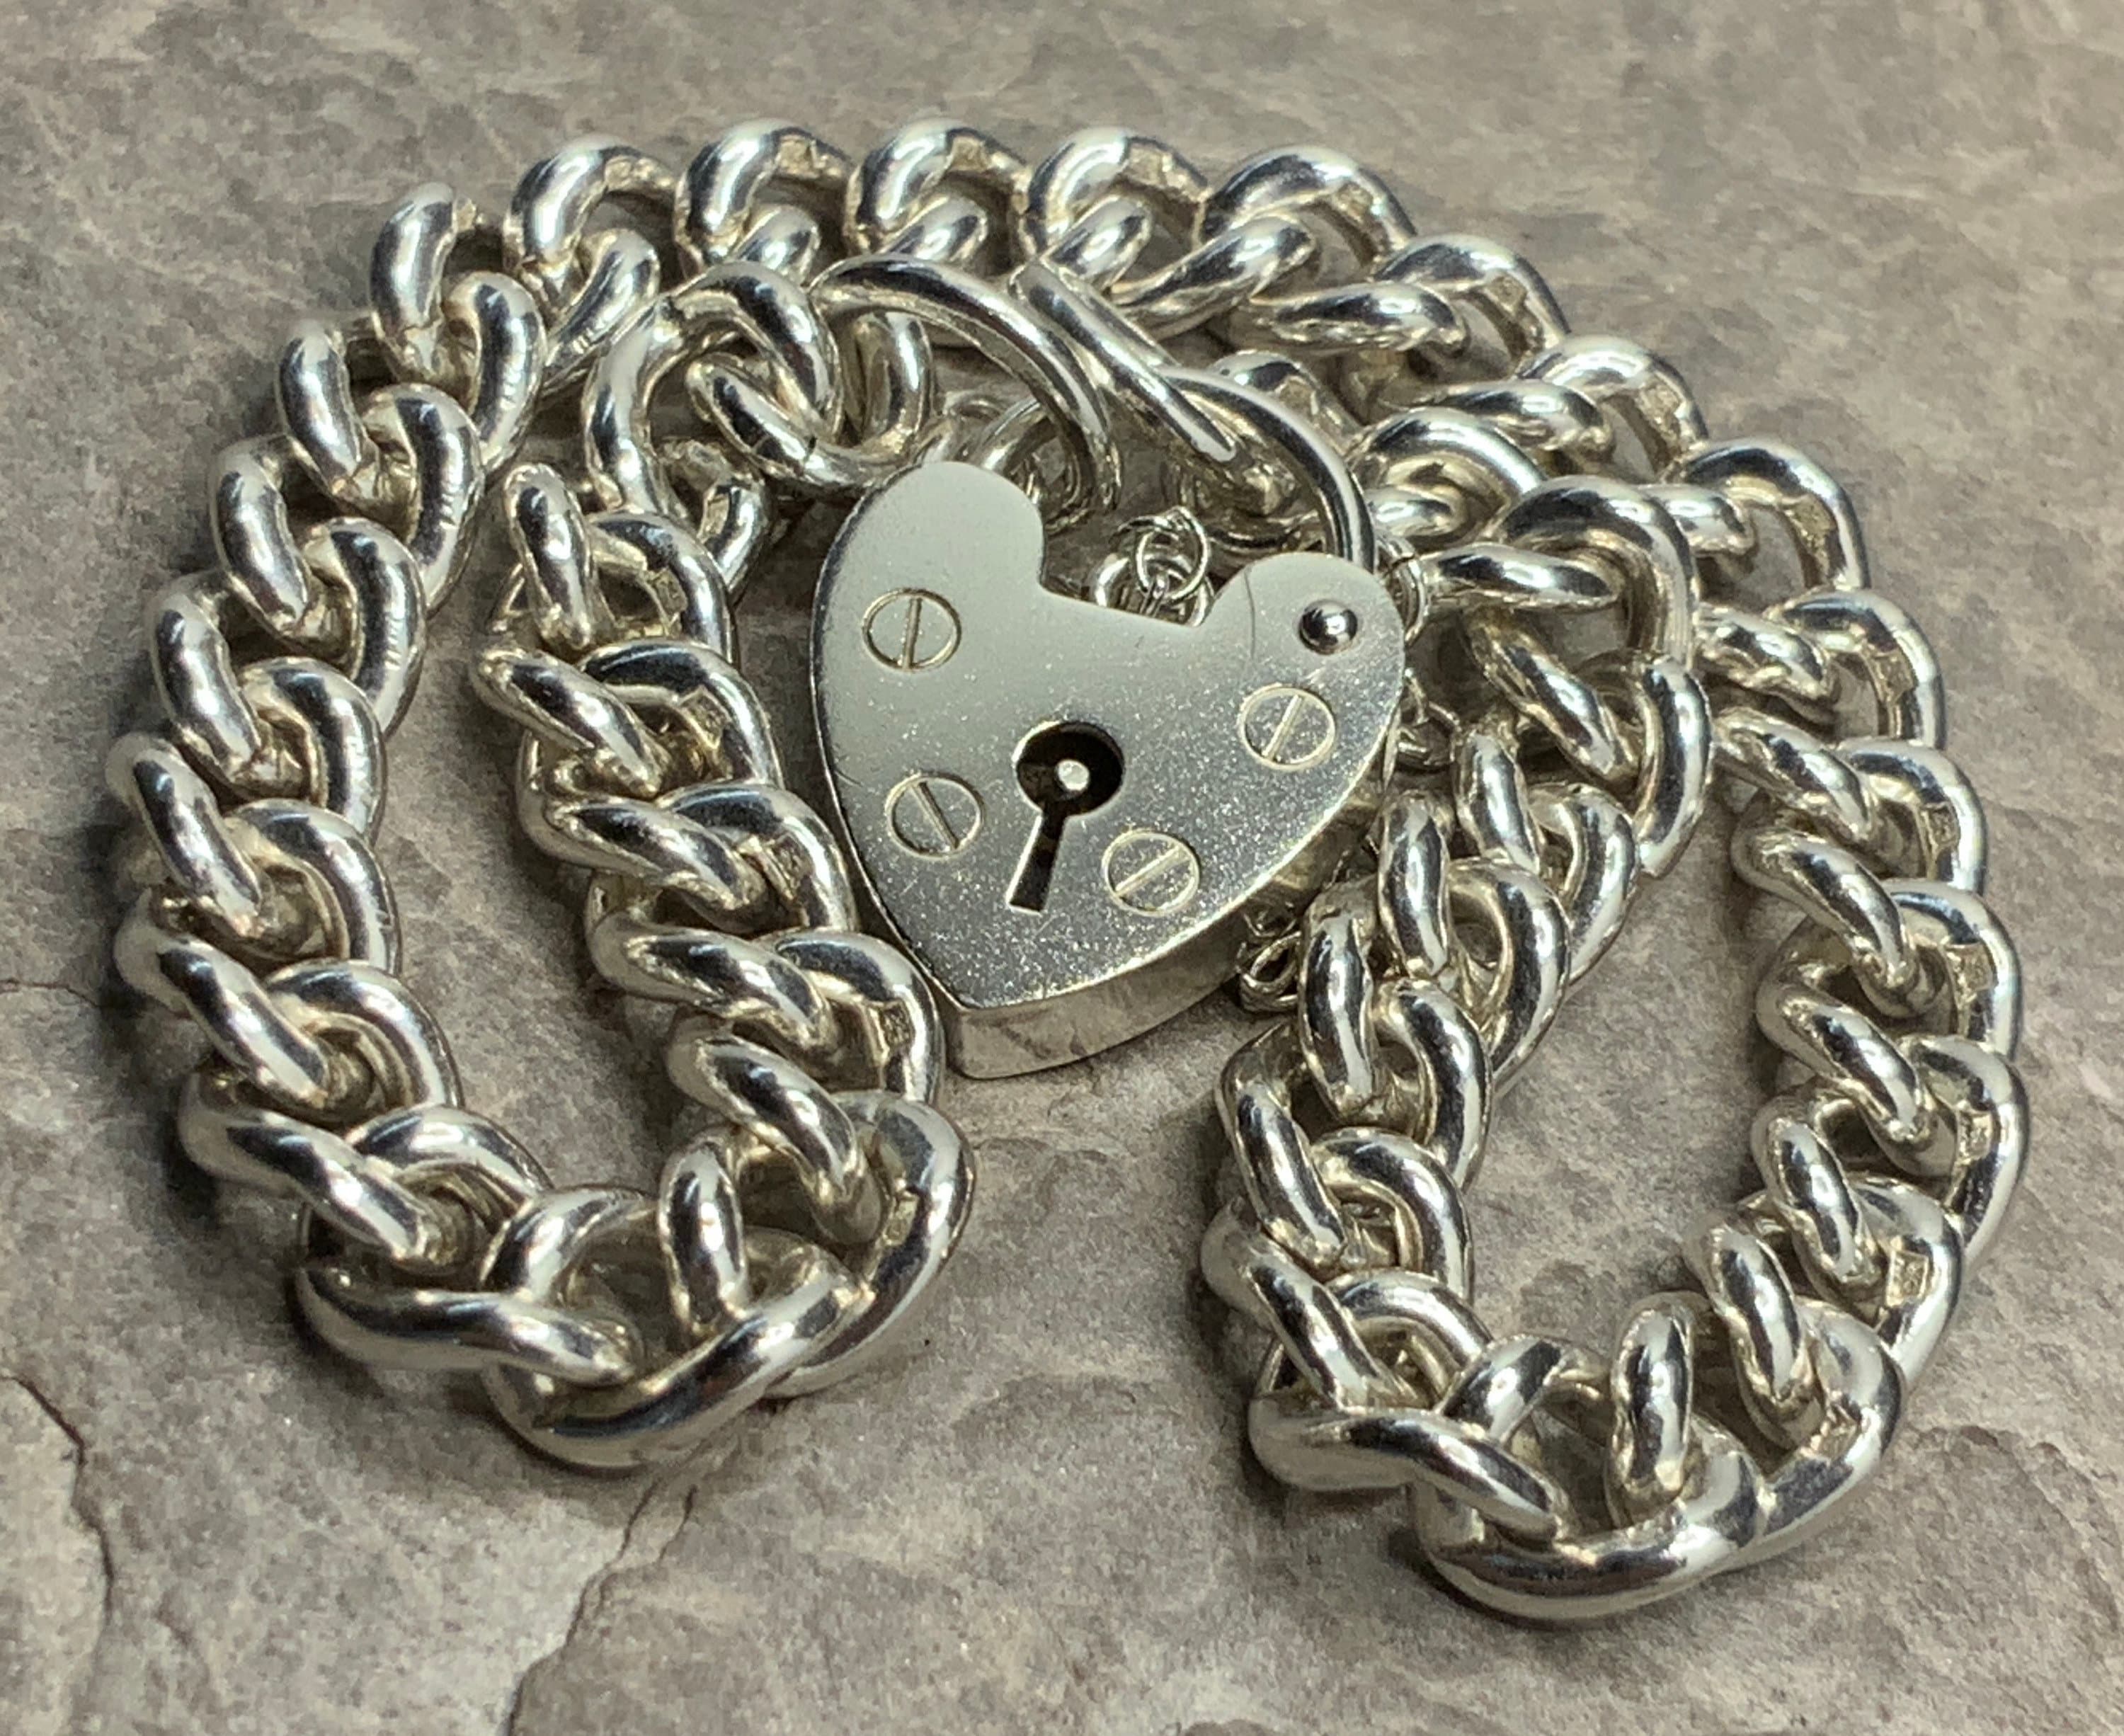 Vintage Sterling Silver Chunky Charm Bracelet Heart Padlock 